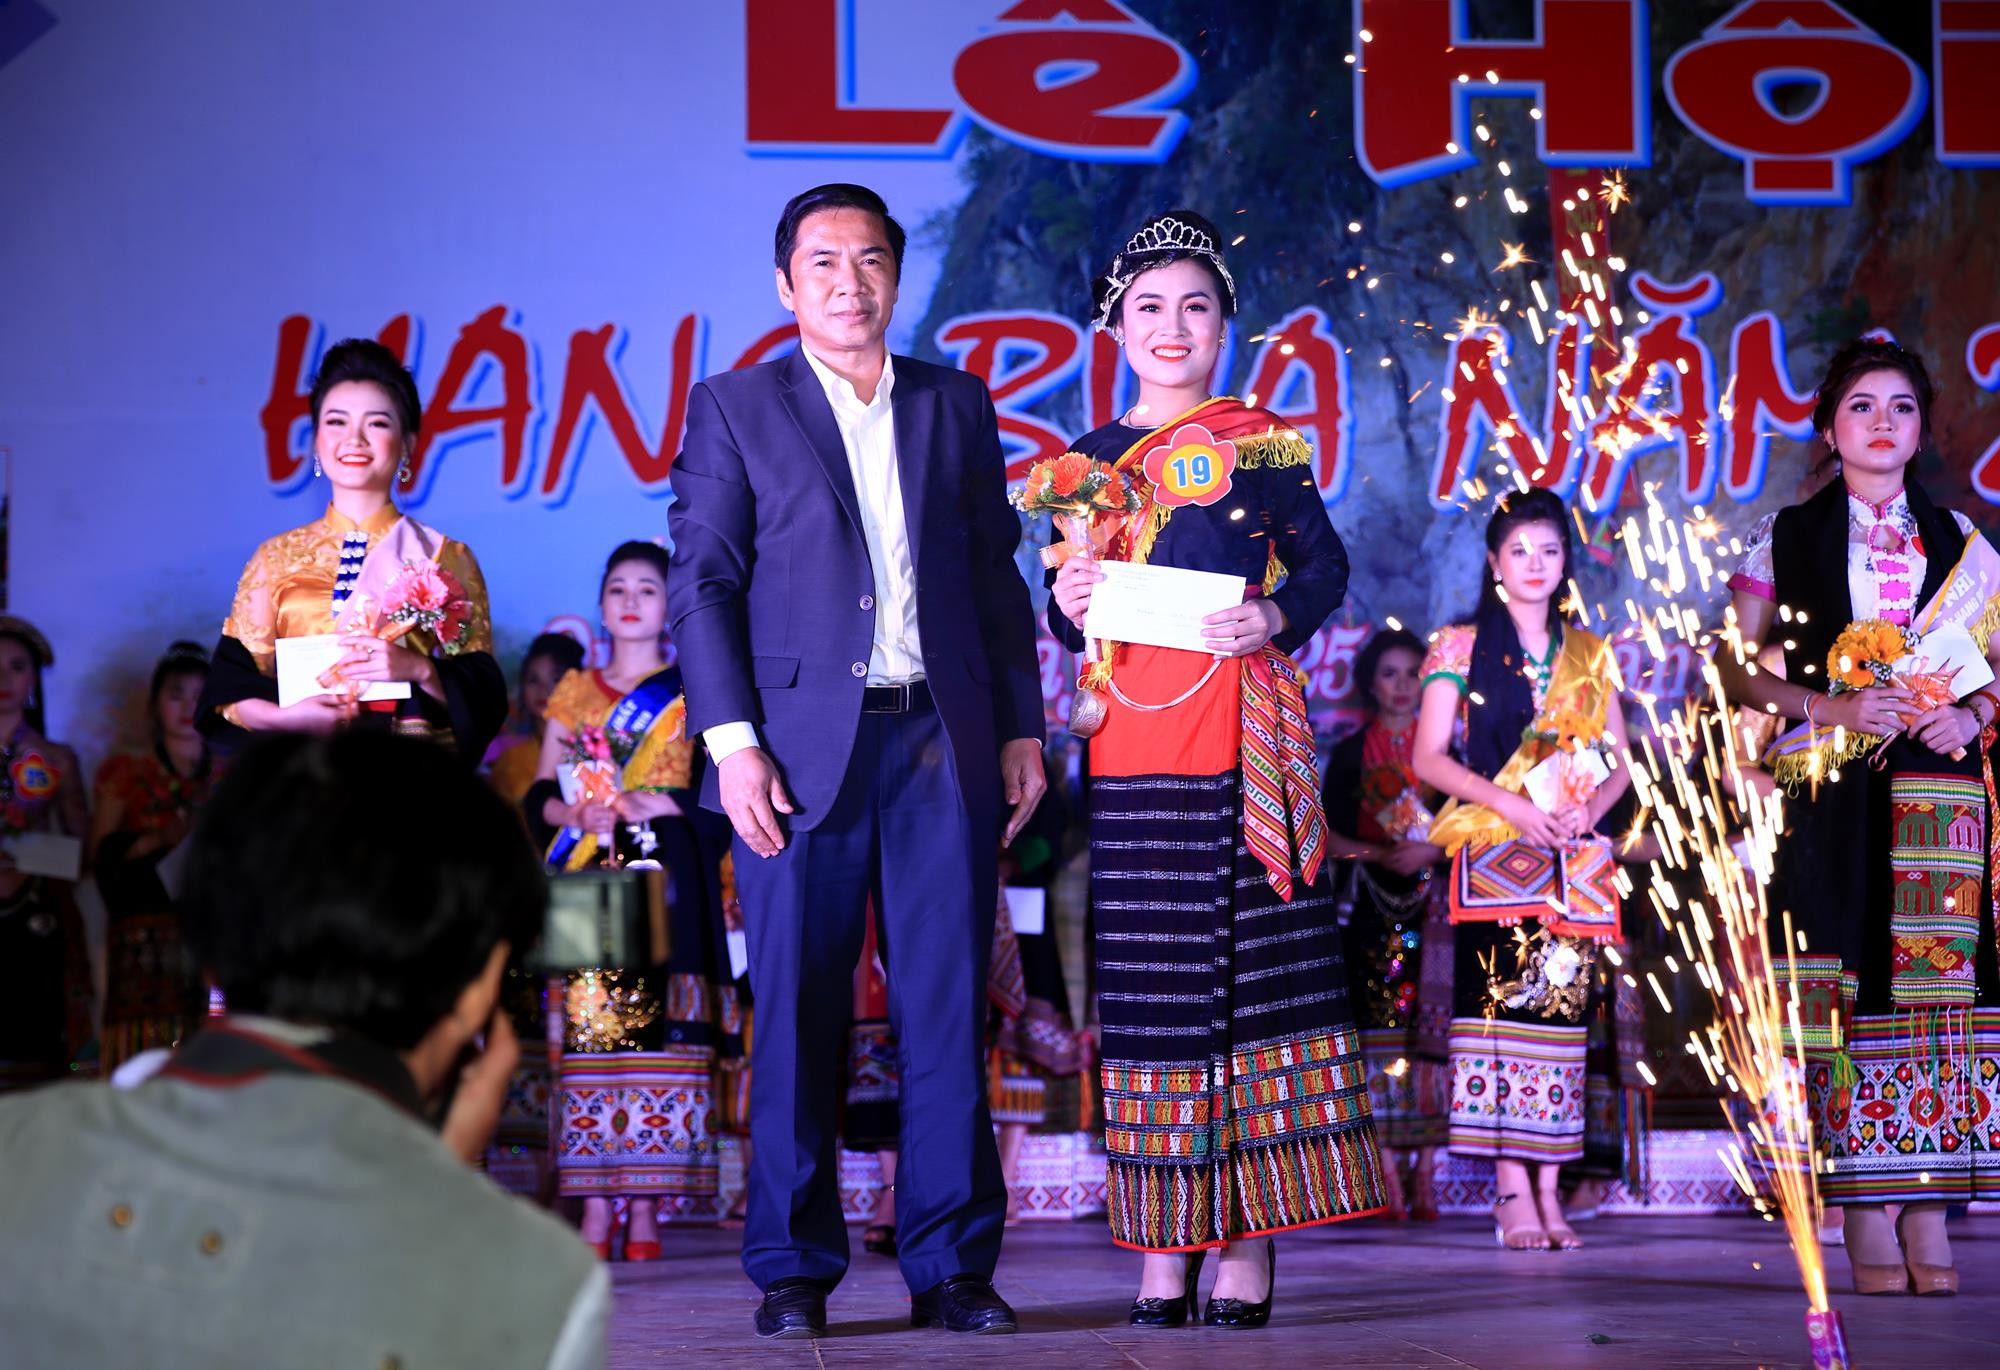 Ông Lang Văn Chiến trao giải nhất cho thí sinh sbd 19 - Lô Thị Mơ - Người đẹp hang Bua 2019 đại diện đến từ trường THPT Quỳ Châu.